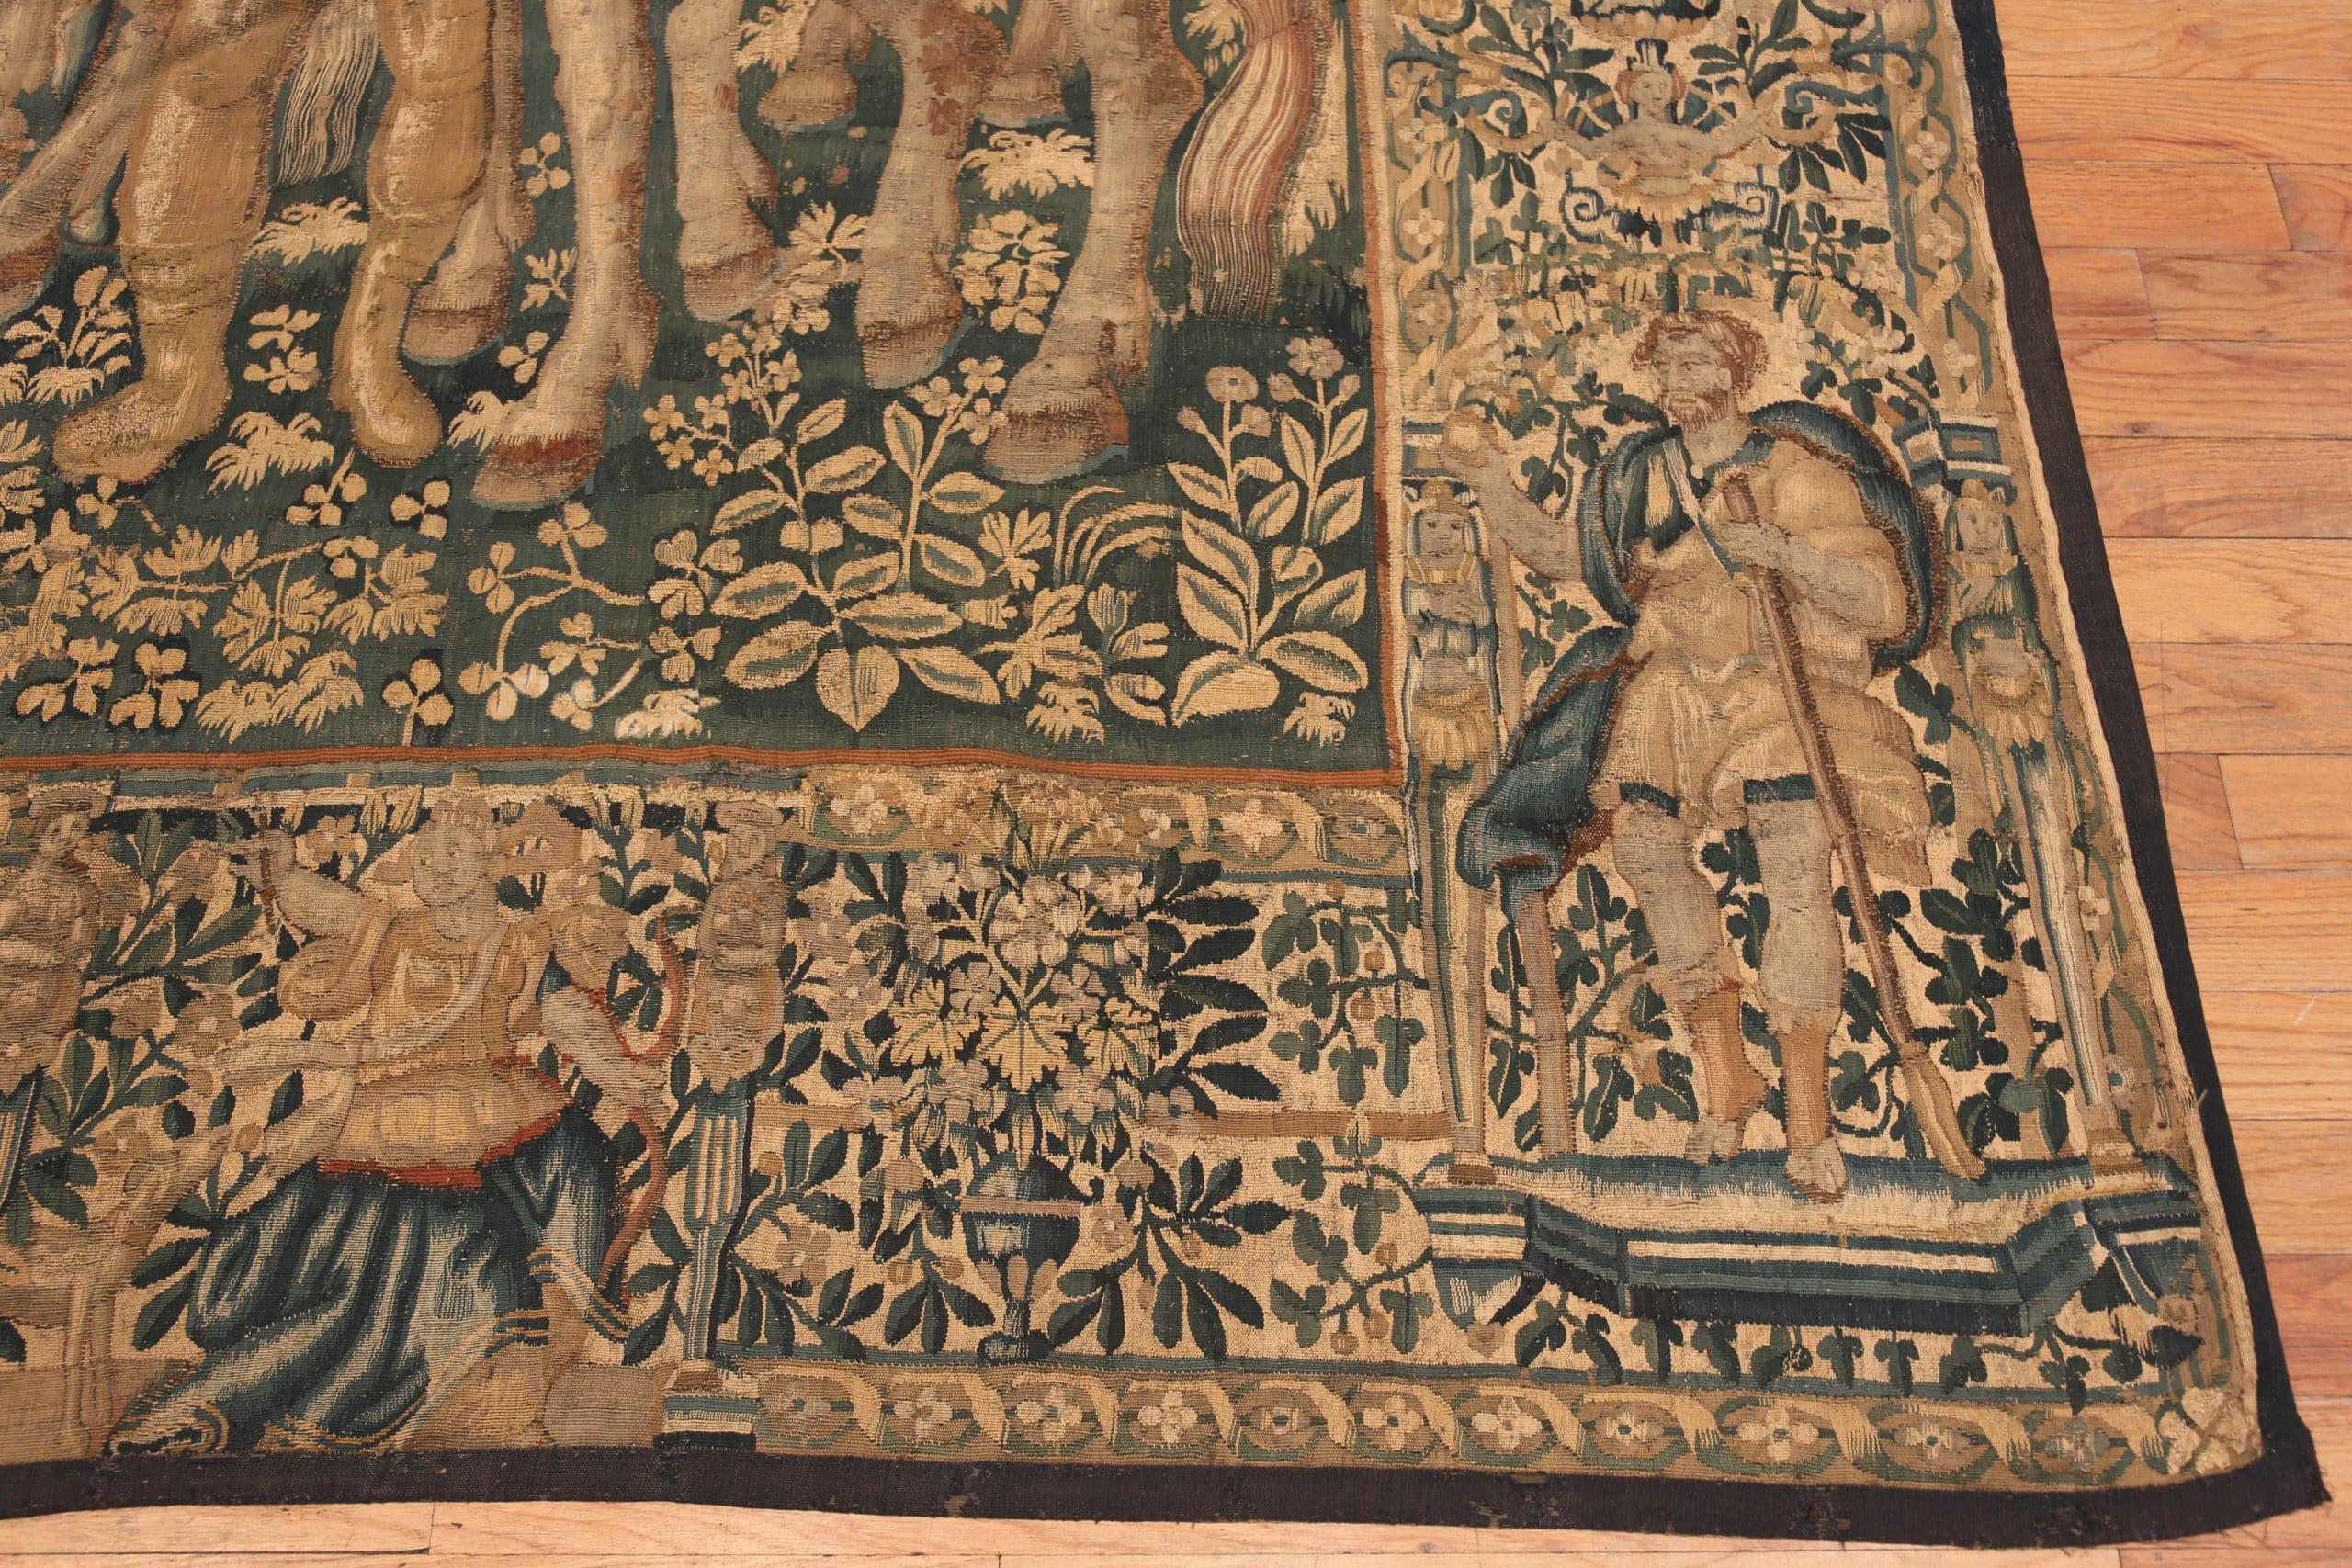 Antiker flämischer König-Salomon-Wandteppich des 16. Jahrhunderts, Herkunftsland: Belgien, CIRCA Datum: 16. Jahrhundert. Größe: 11 ft 4 in x 12 ft 10 in (3,45 m x 3,91 m)

